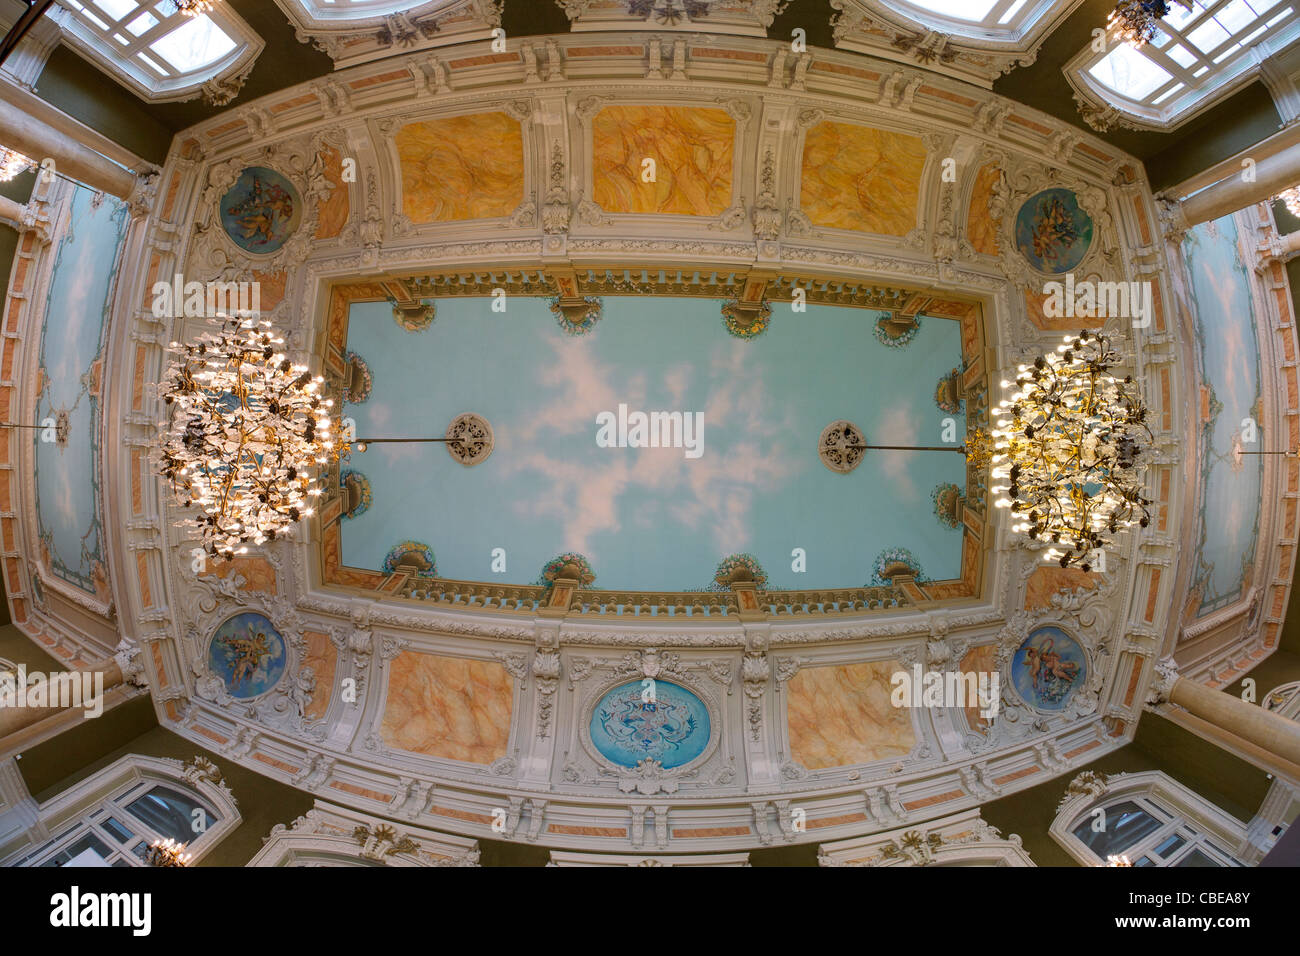 Dans l'opéra de Vichy, les trompe-l'oeil de plafond du Salon Napoléon III (Centre des Congrès - Vichy - Auvergne - France). Banque D'Images